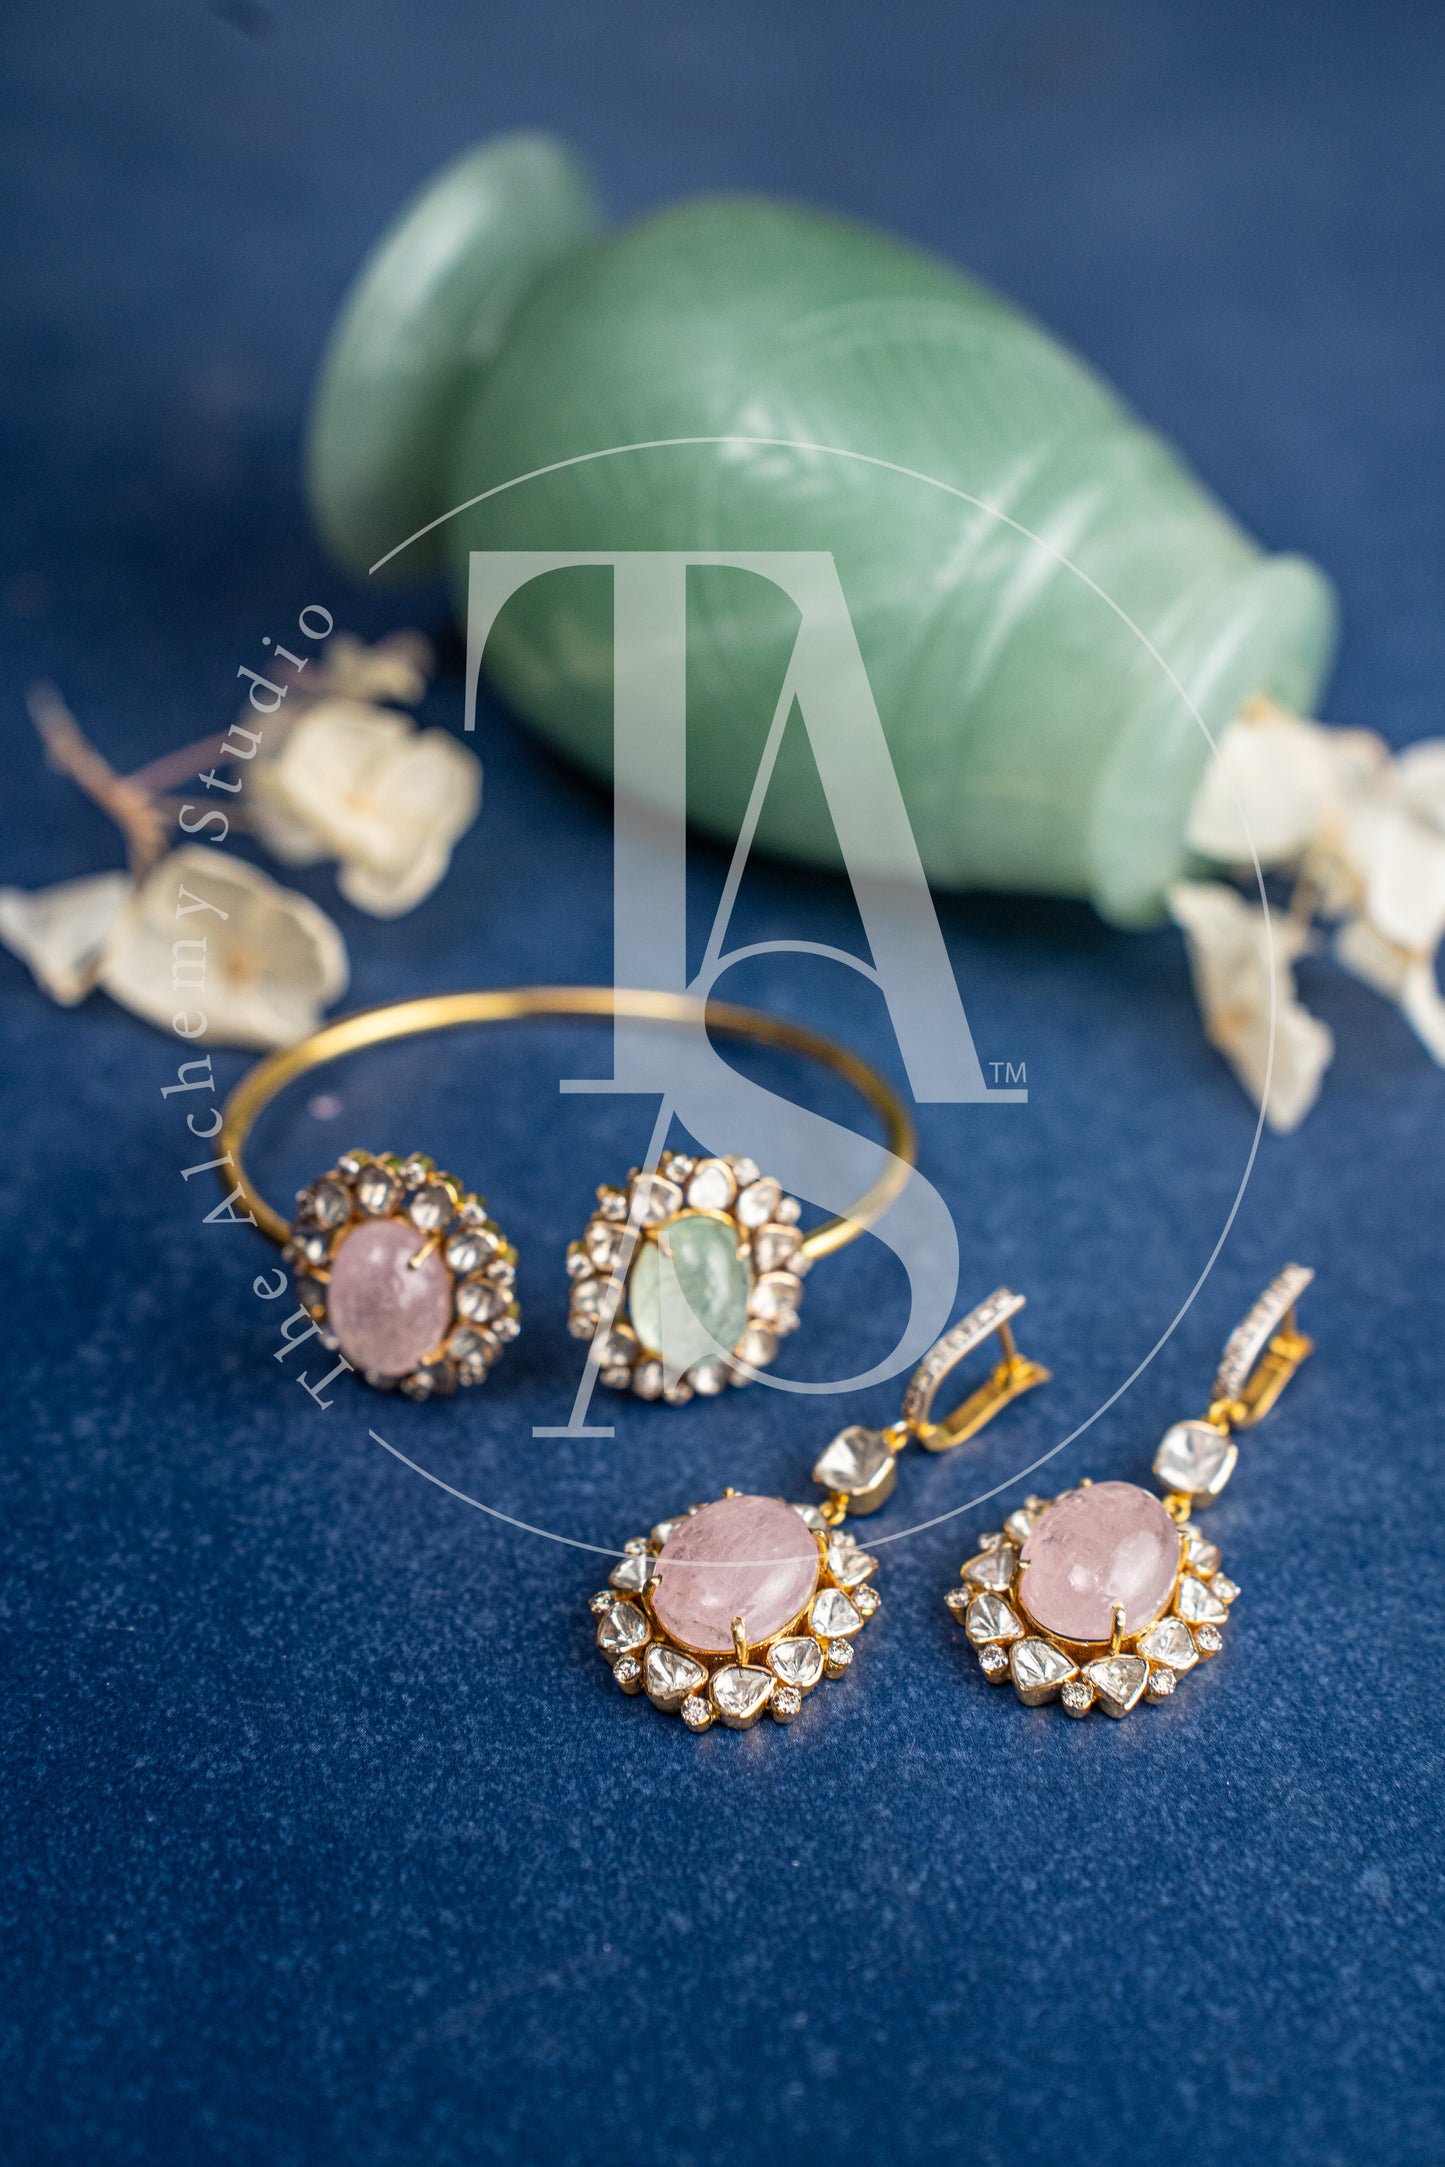 Jeahh Uncut Diamond and Morganite Hanging Flower Earrings